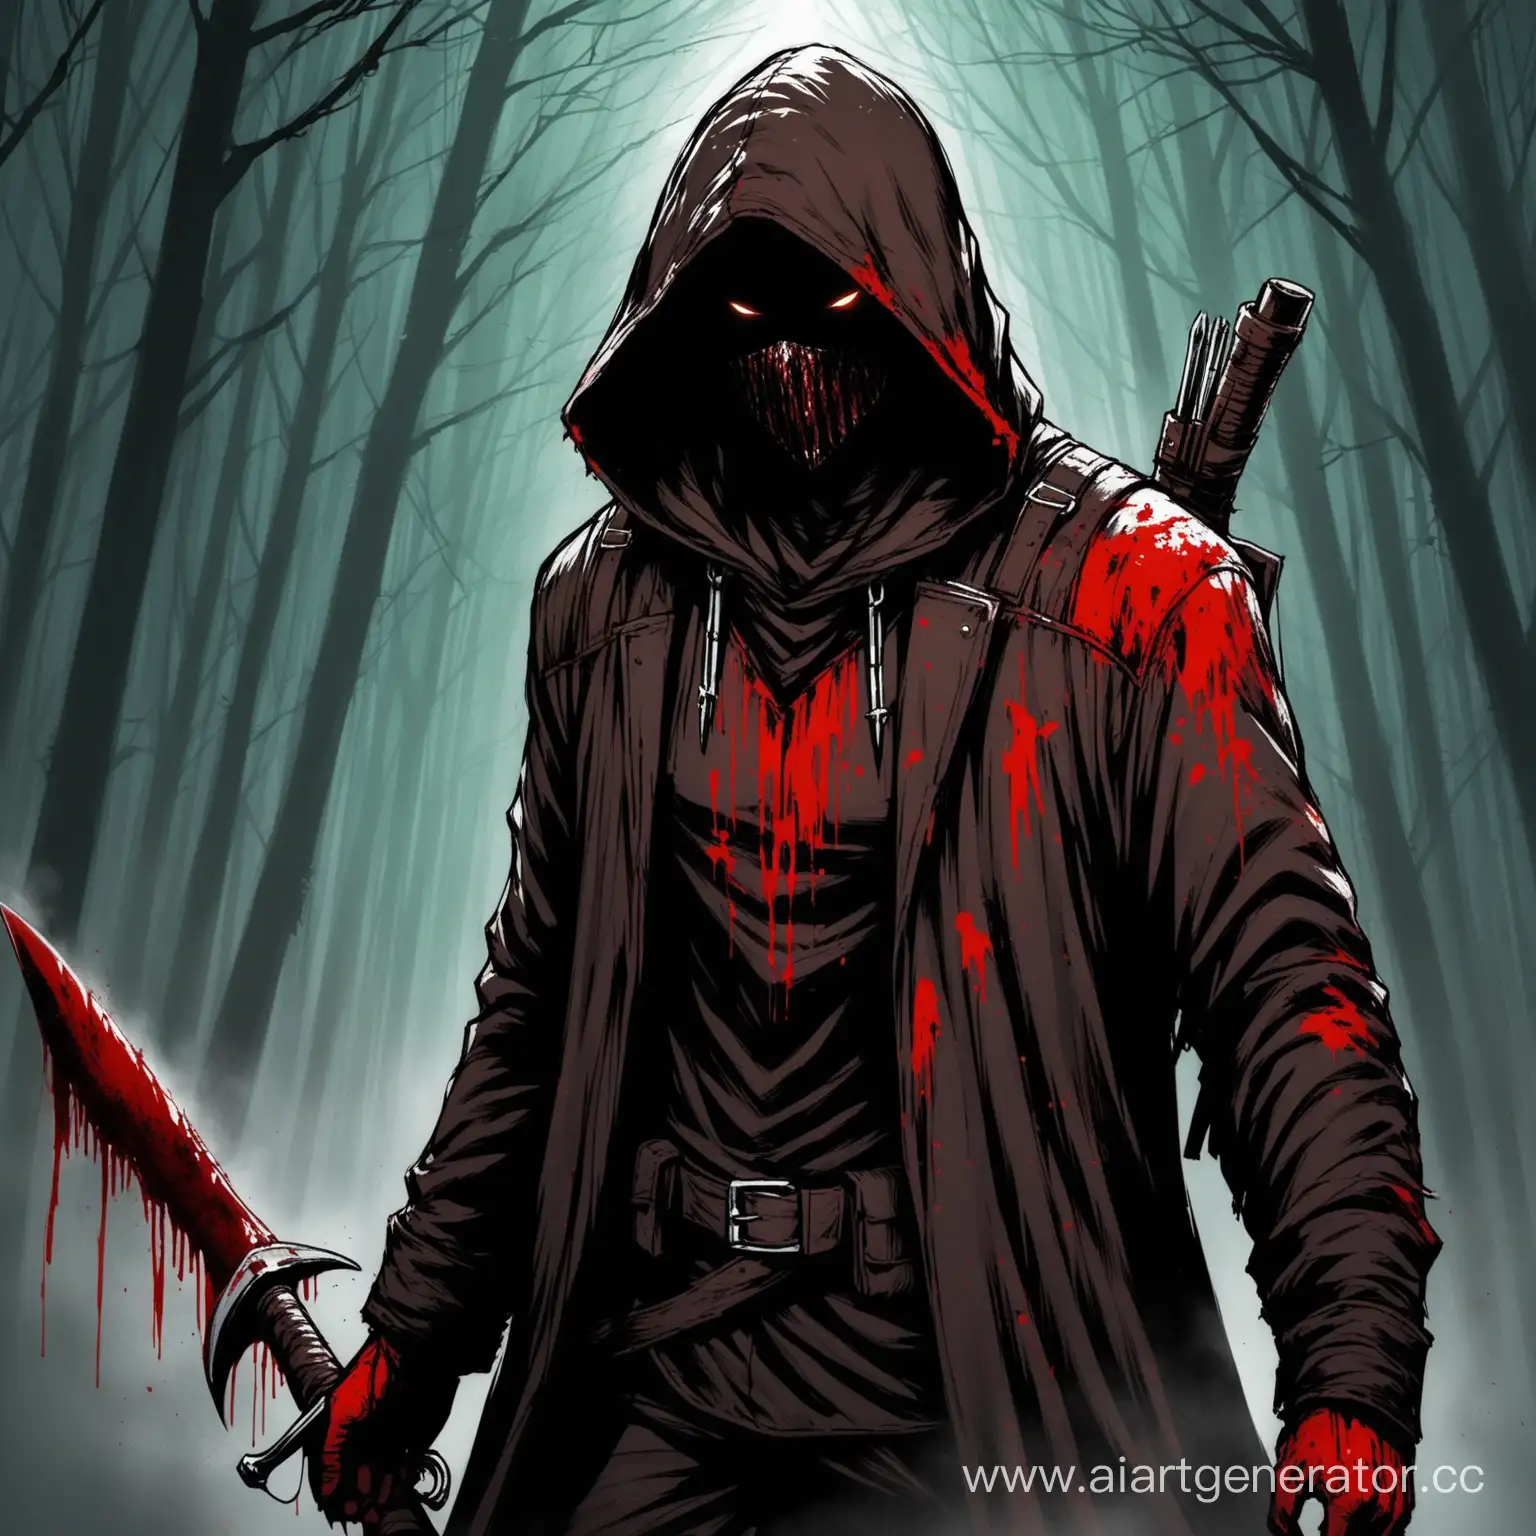 Grim-Hunter-in-Hooded-Cloak-in-a-Dark-Forest